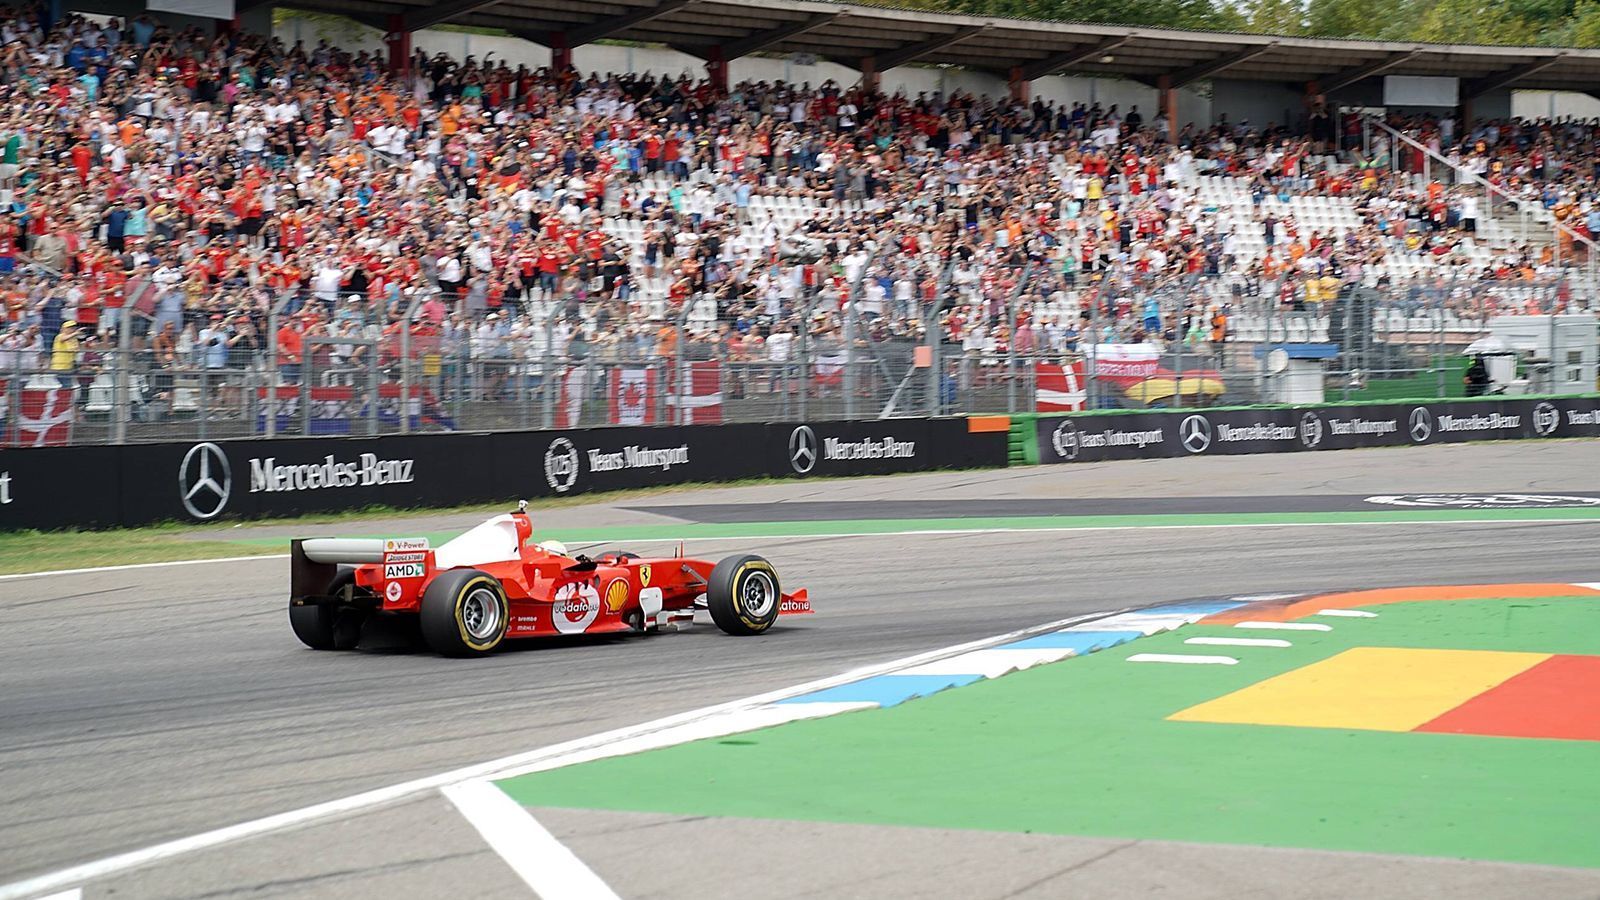 
                <strong>Mick Schumacher fährt im Weltmeister-Ferrari seines Vaters in Hockenheim</strong><br>
                Mick schickt sich bereits an, in die großen Fußstapfen seines Vaters zu treten. Er fährt seit dieser Saison in der Formel 2 für das Prema Powerteam.
              